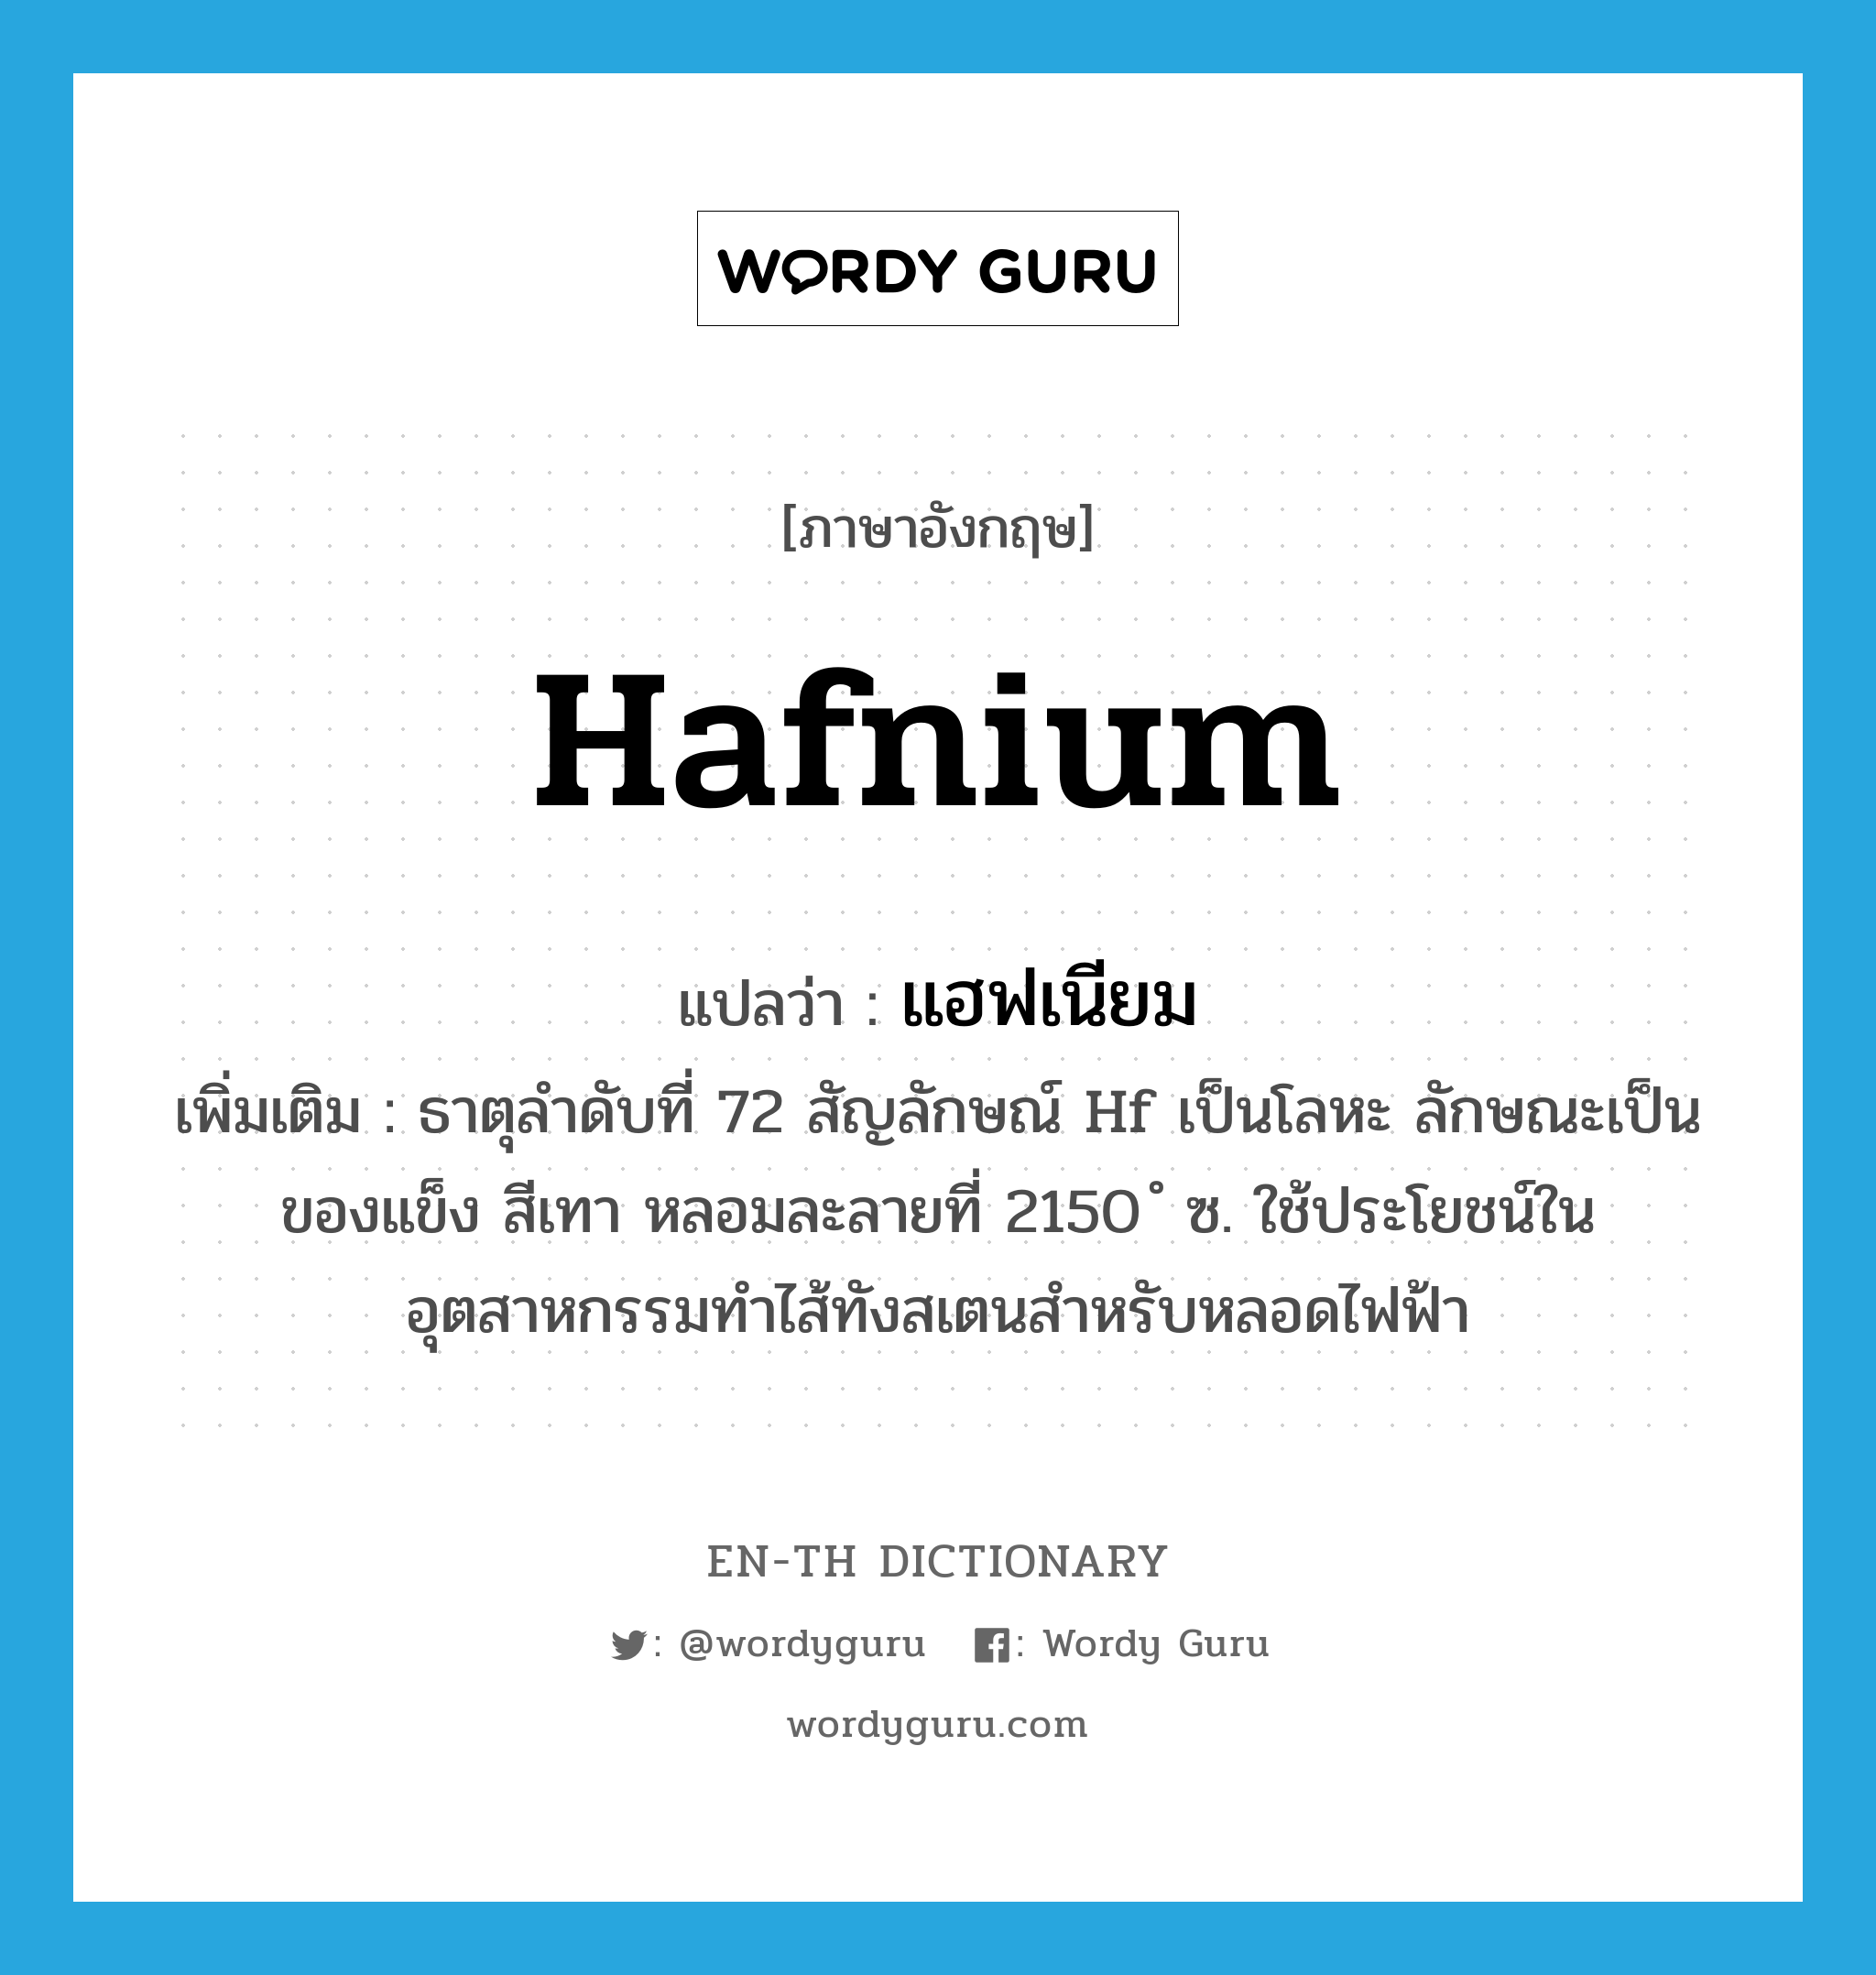 แฮฟเนียม ภาษาอังกฤษ?, คำศัพท์ภาษาอังกฤษ แฮฟเนียม แปลว่า hafnium ประเภท N เพิ่มเติม ธาตุลำดับที่ 72 สัญลักษณ์ Hf เป็นโลหะ ลักษณะเป็นของแข็ง สีเทา หลอมละลายที่ 2150 ํ ซ. ใช้ประโยชน์ในอุตสาหกรรมทำไส้ทังสเตนสำหรับหลอดไฟฟ้า หมวด N